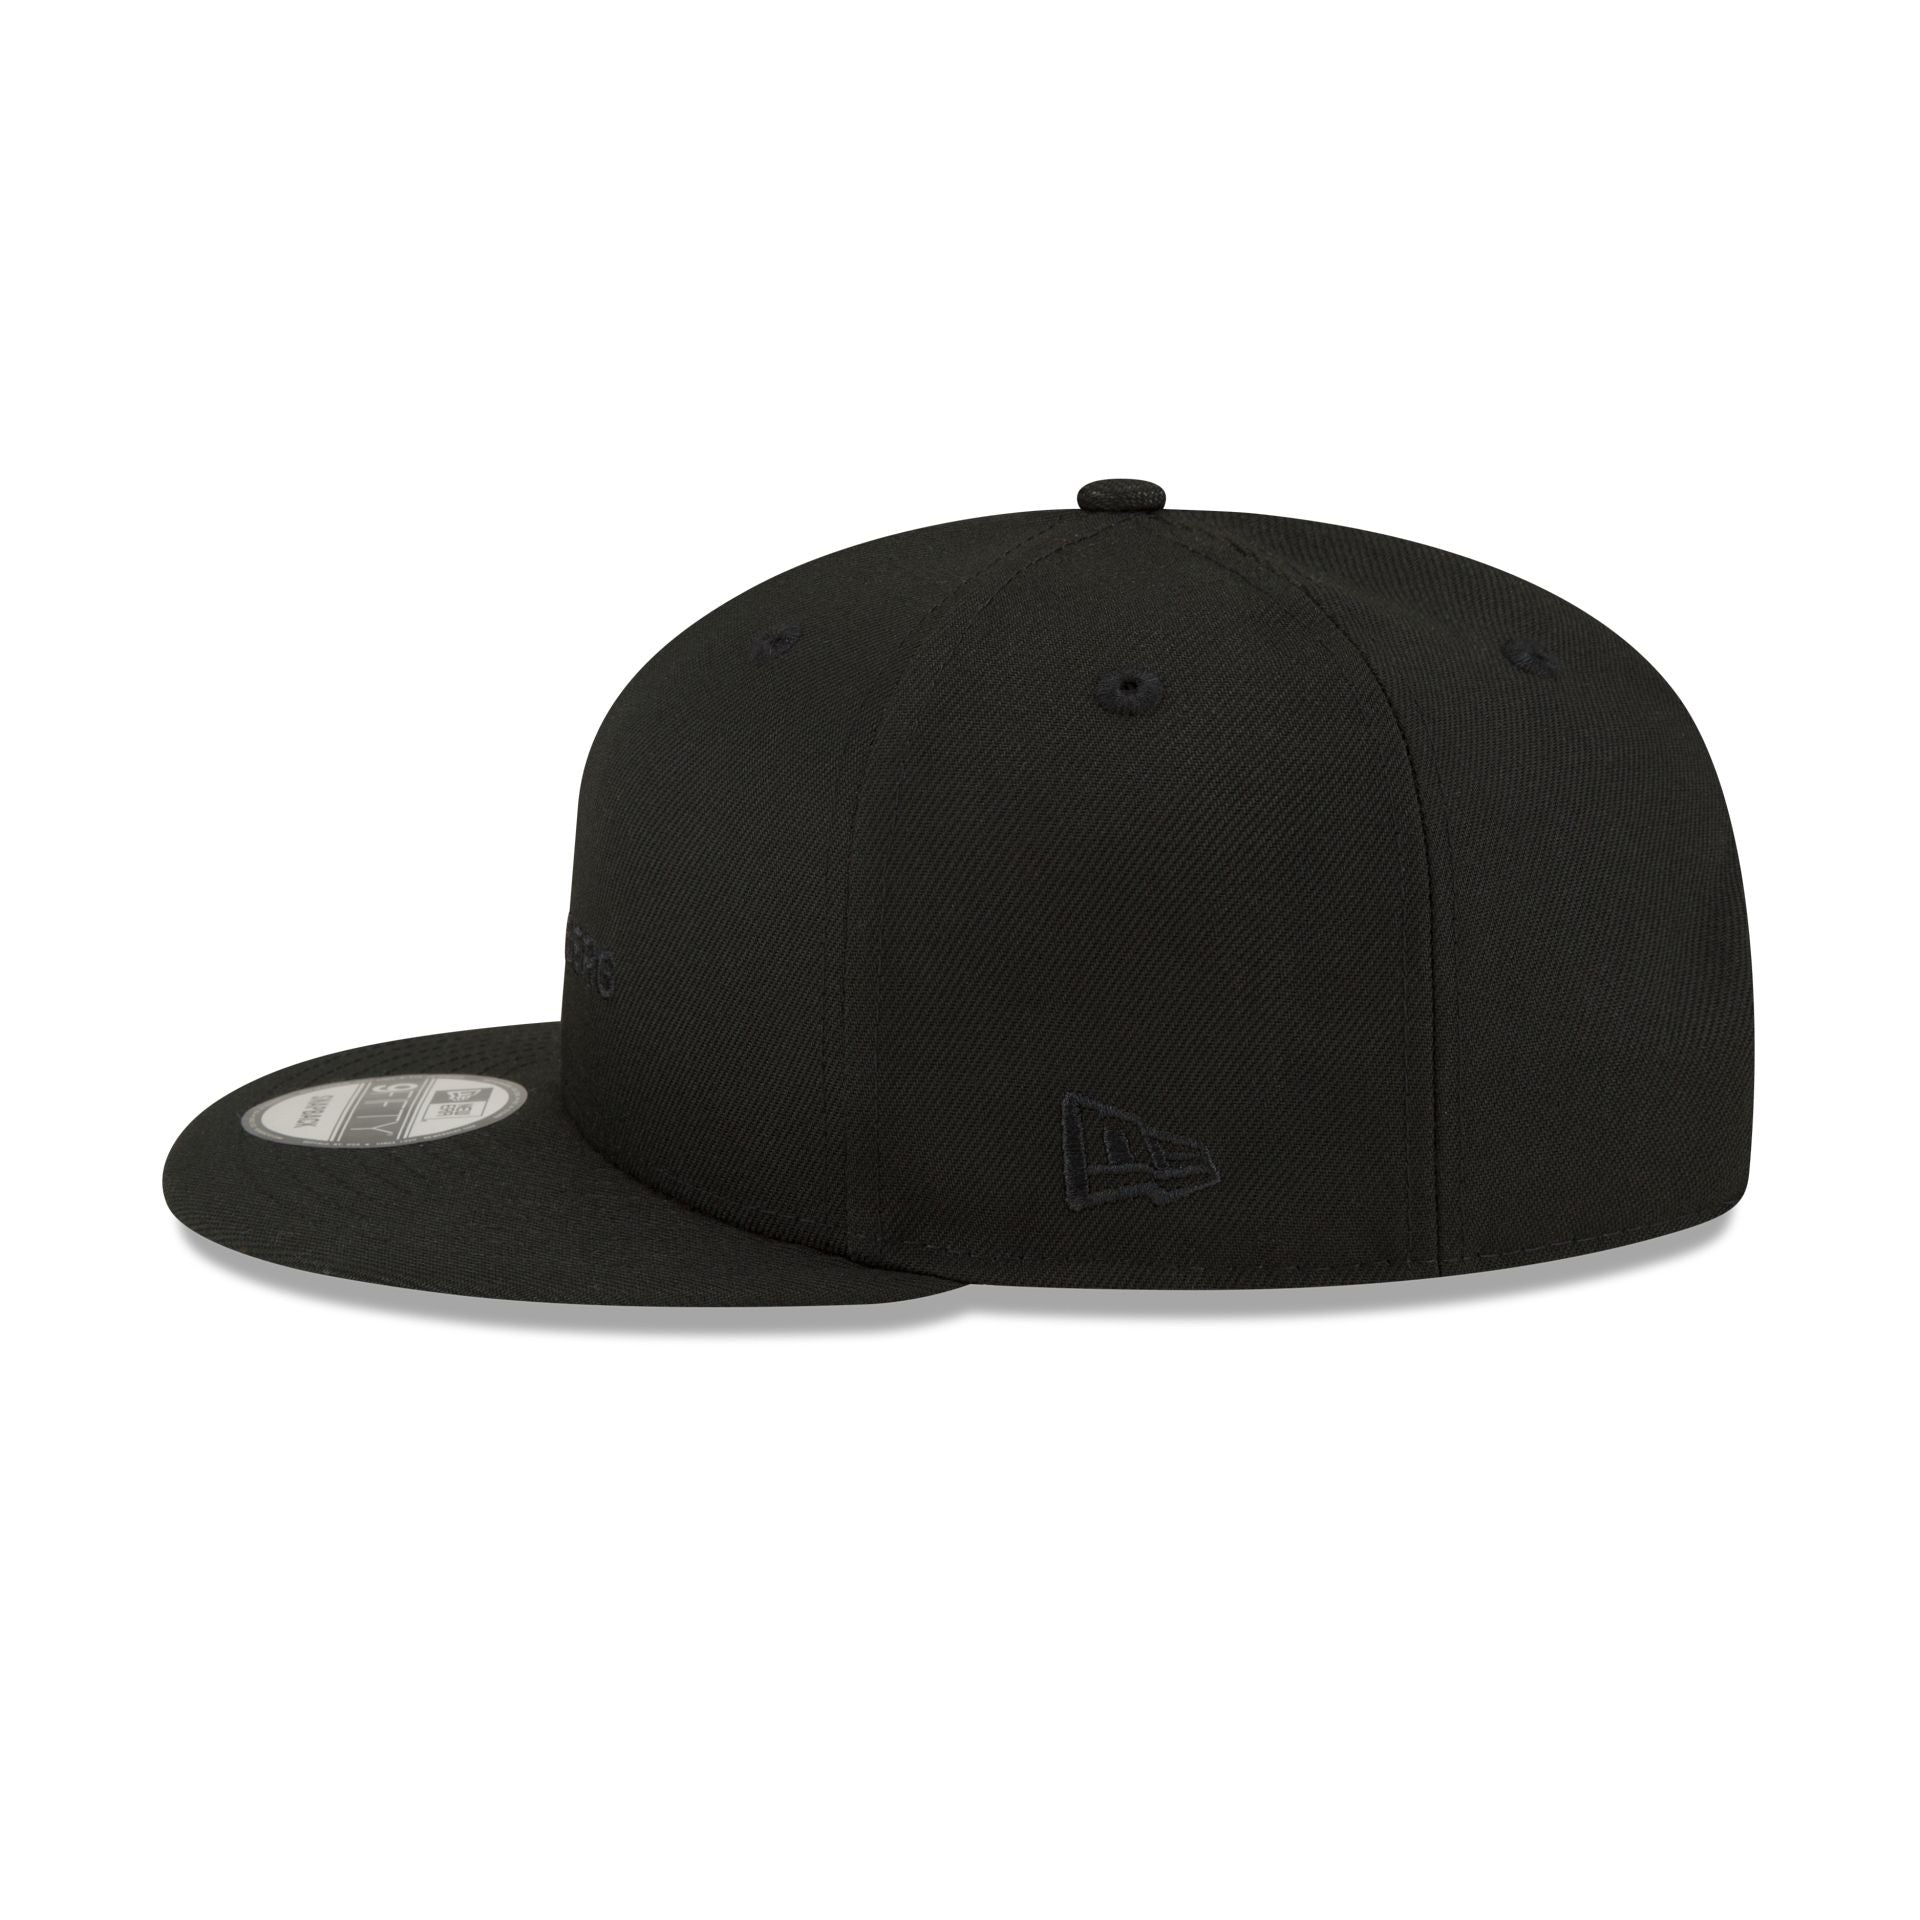 J. Lindeberg Black 9FIFTY Snapback Hat – New Era Cap